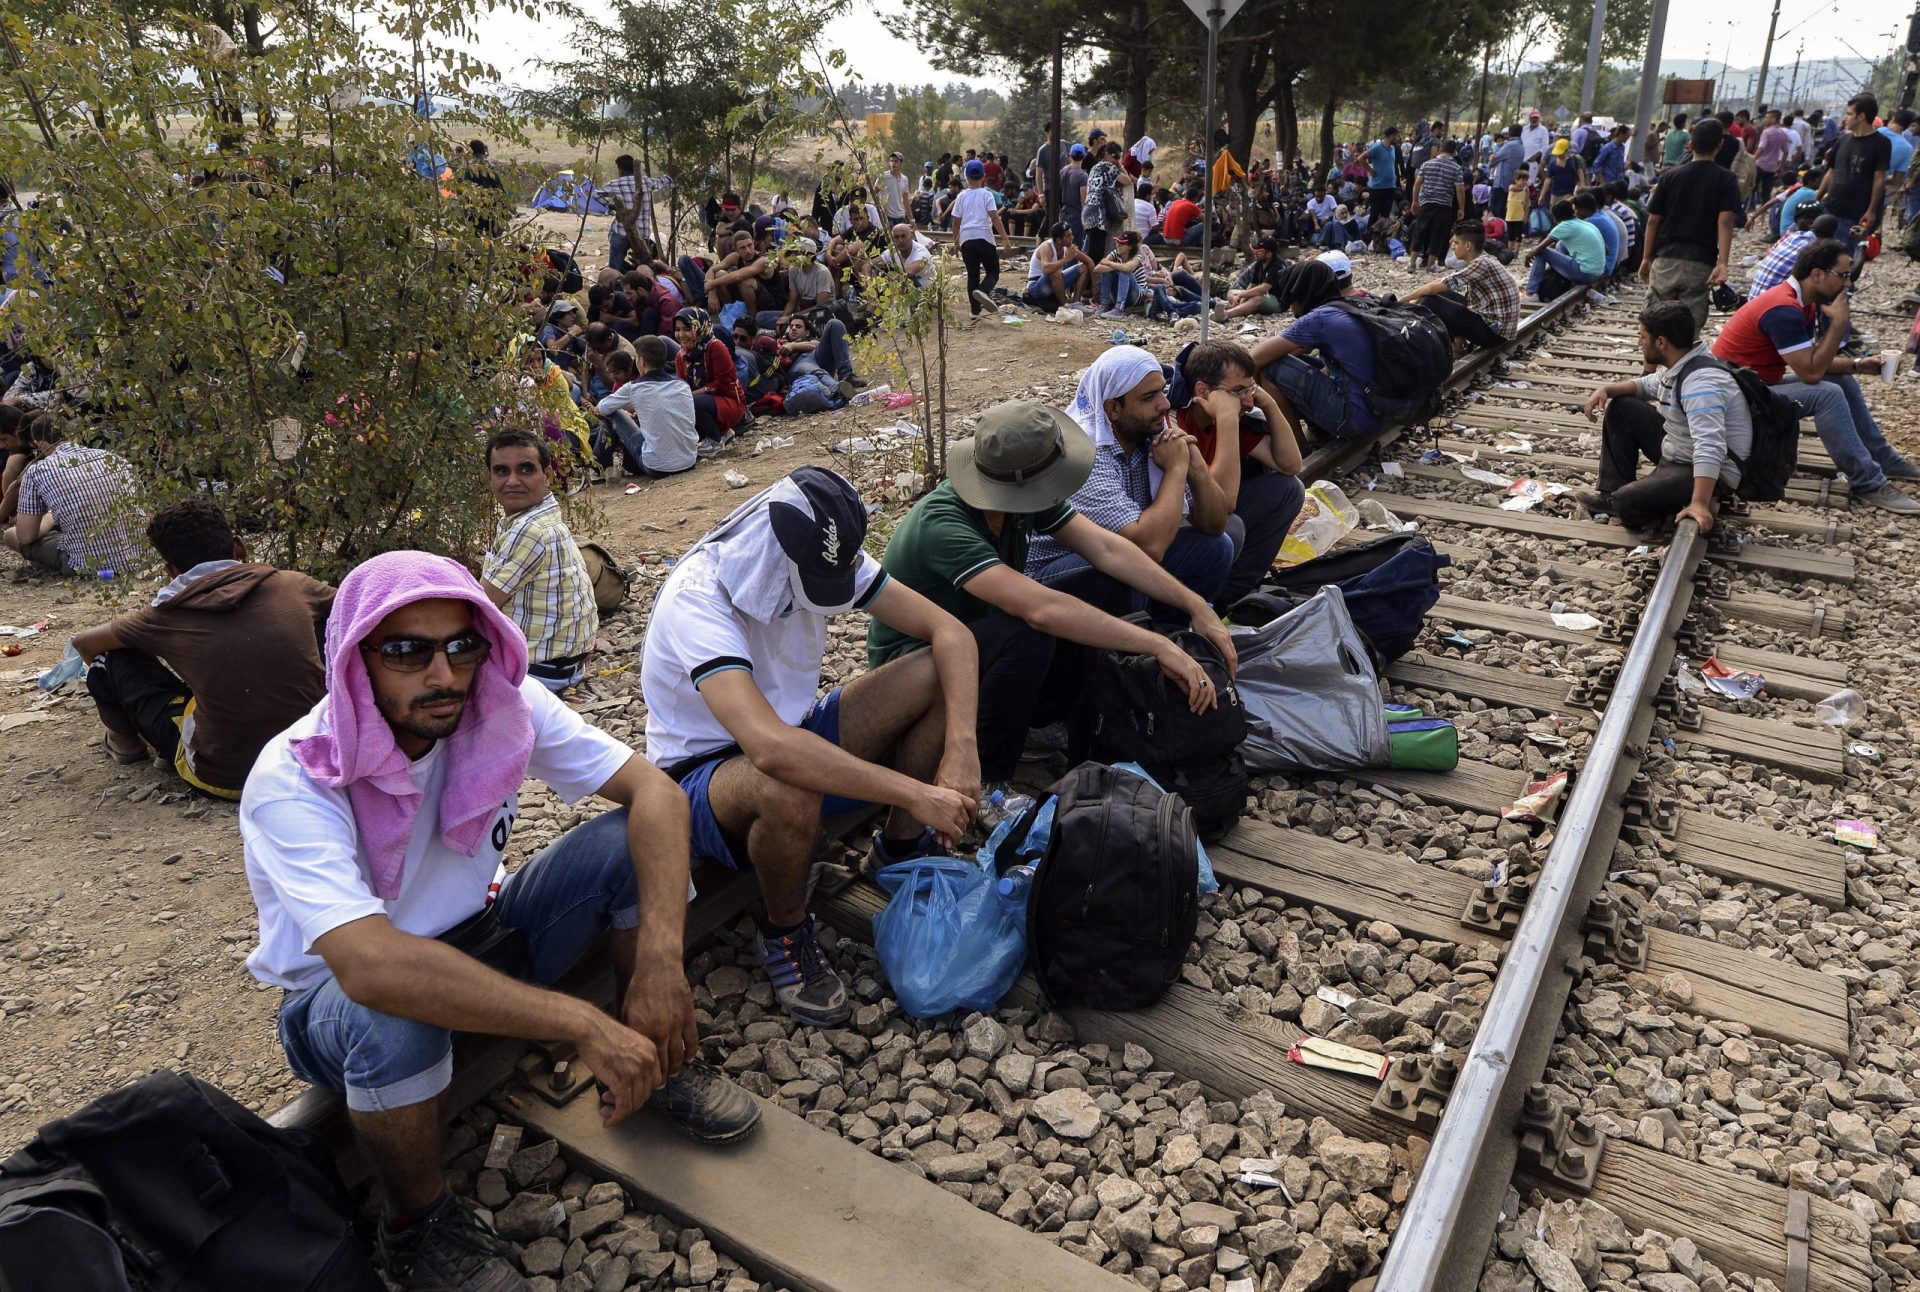 Macedónia declara ‘estado de emergência’ devido ao afluxo de migrantes